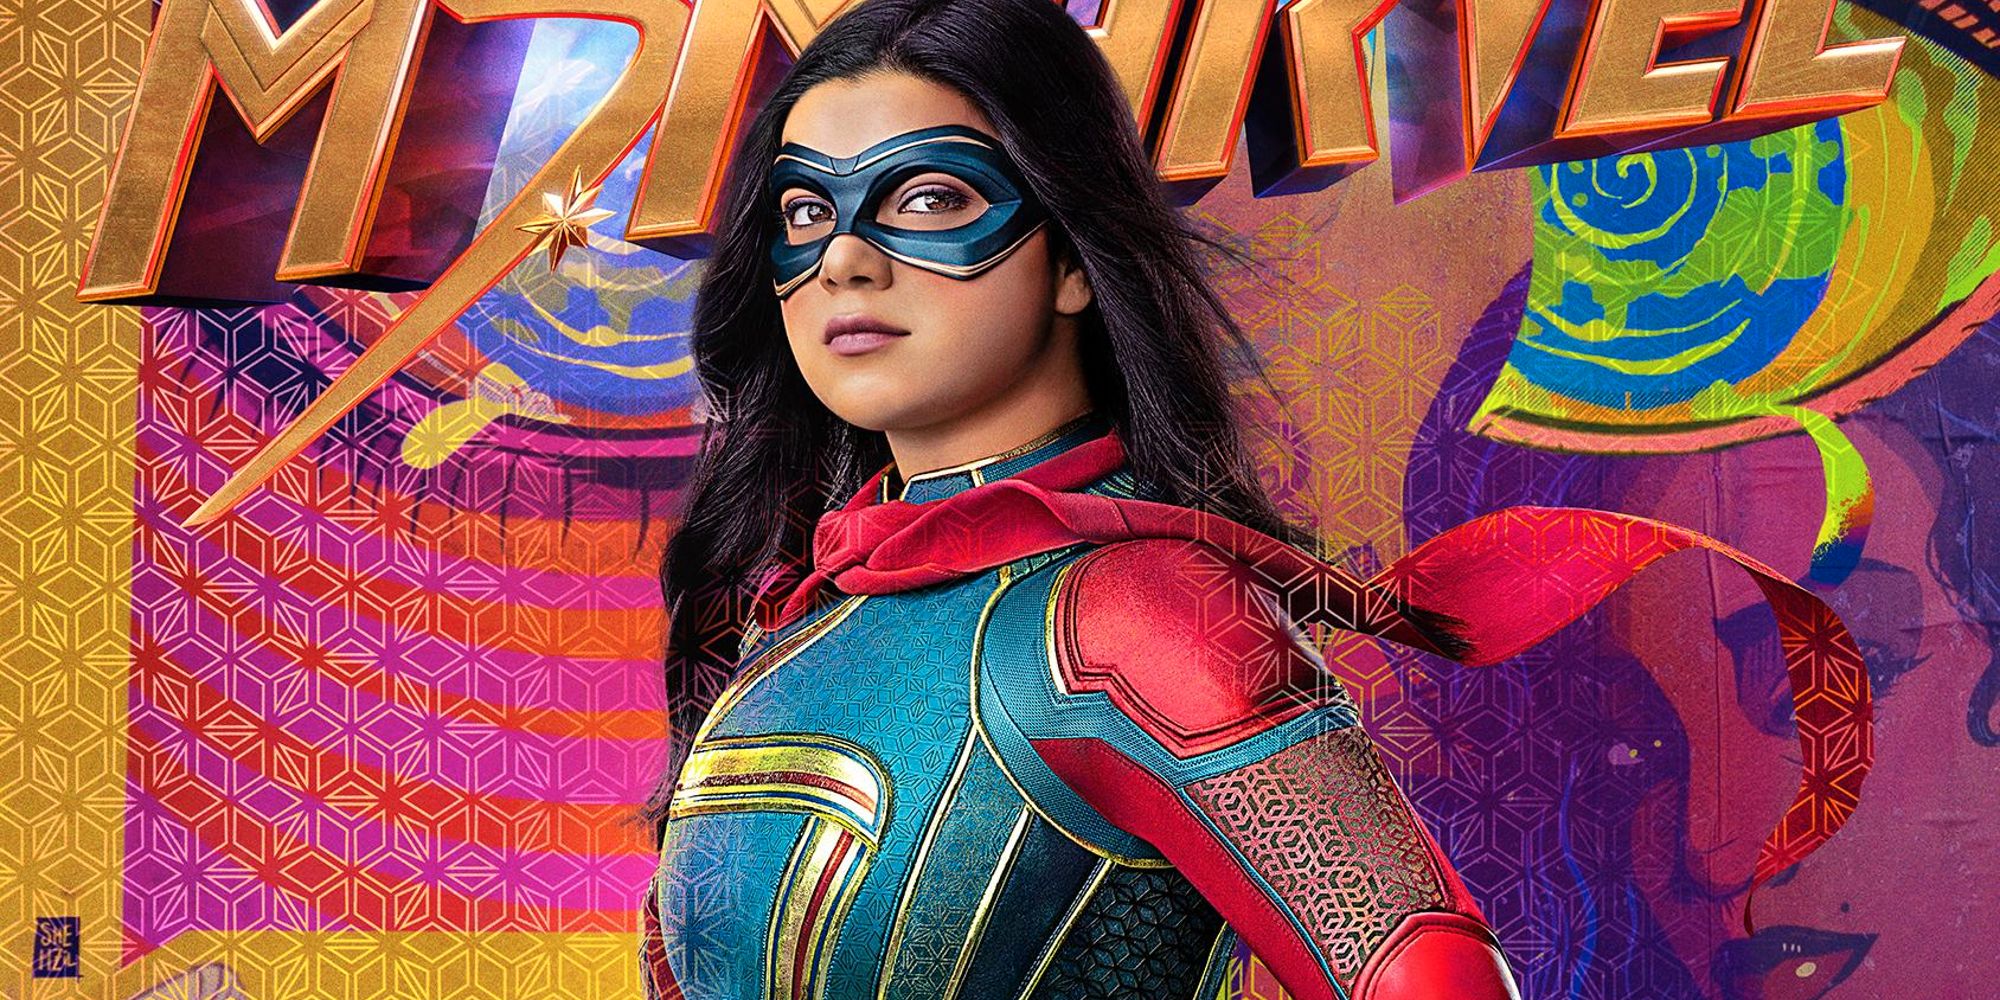 Los carteles de los personajes de Ms. Marvel revelan una mirada colorida al elenco completo